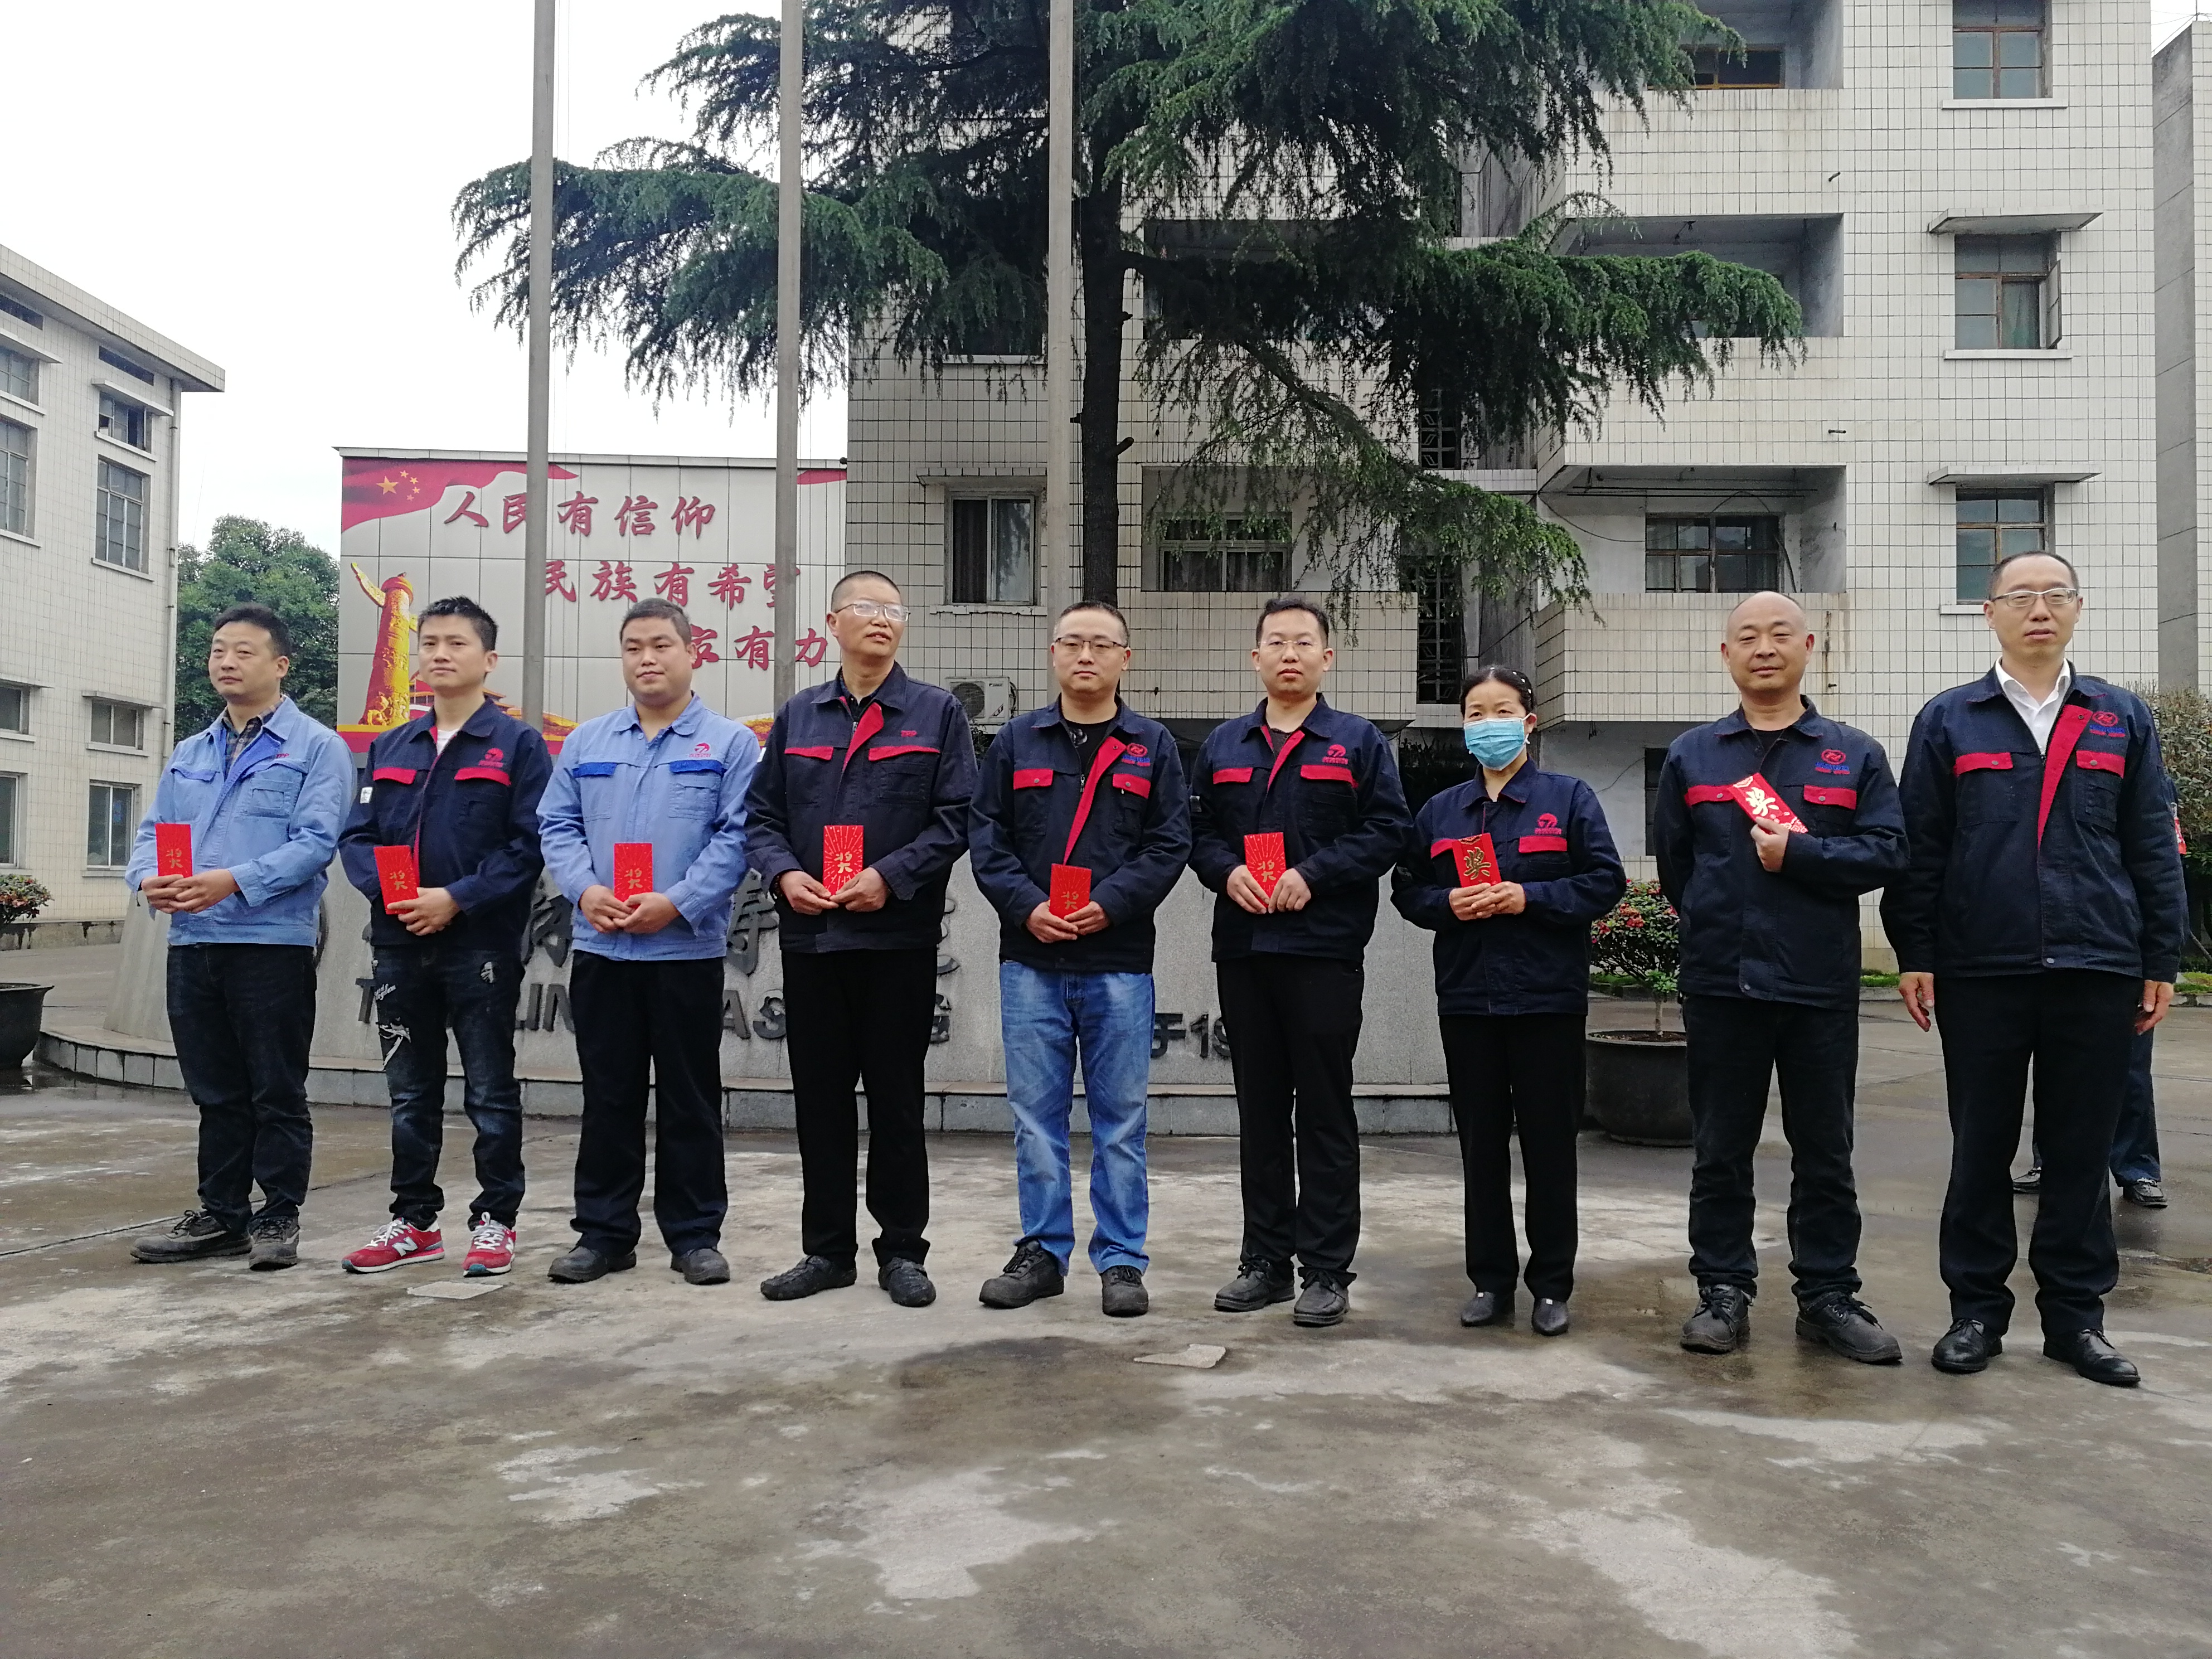 Gratulujeme Zhengheng Power Casting Factory k získání 22 patentů v roce 2020